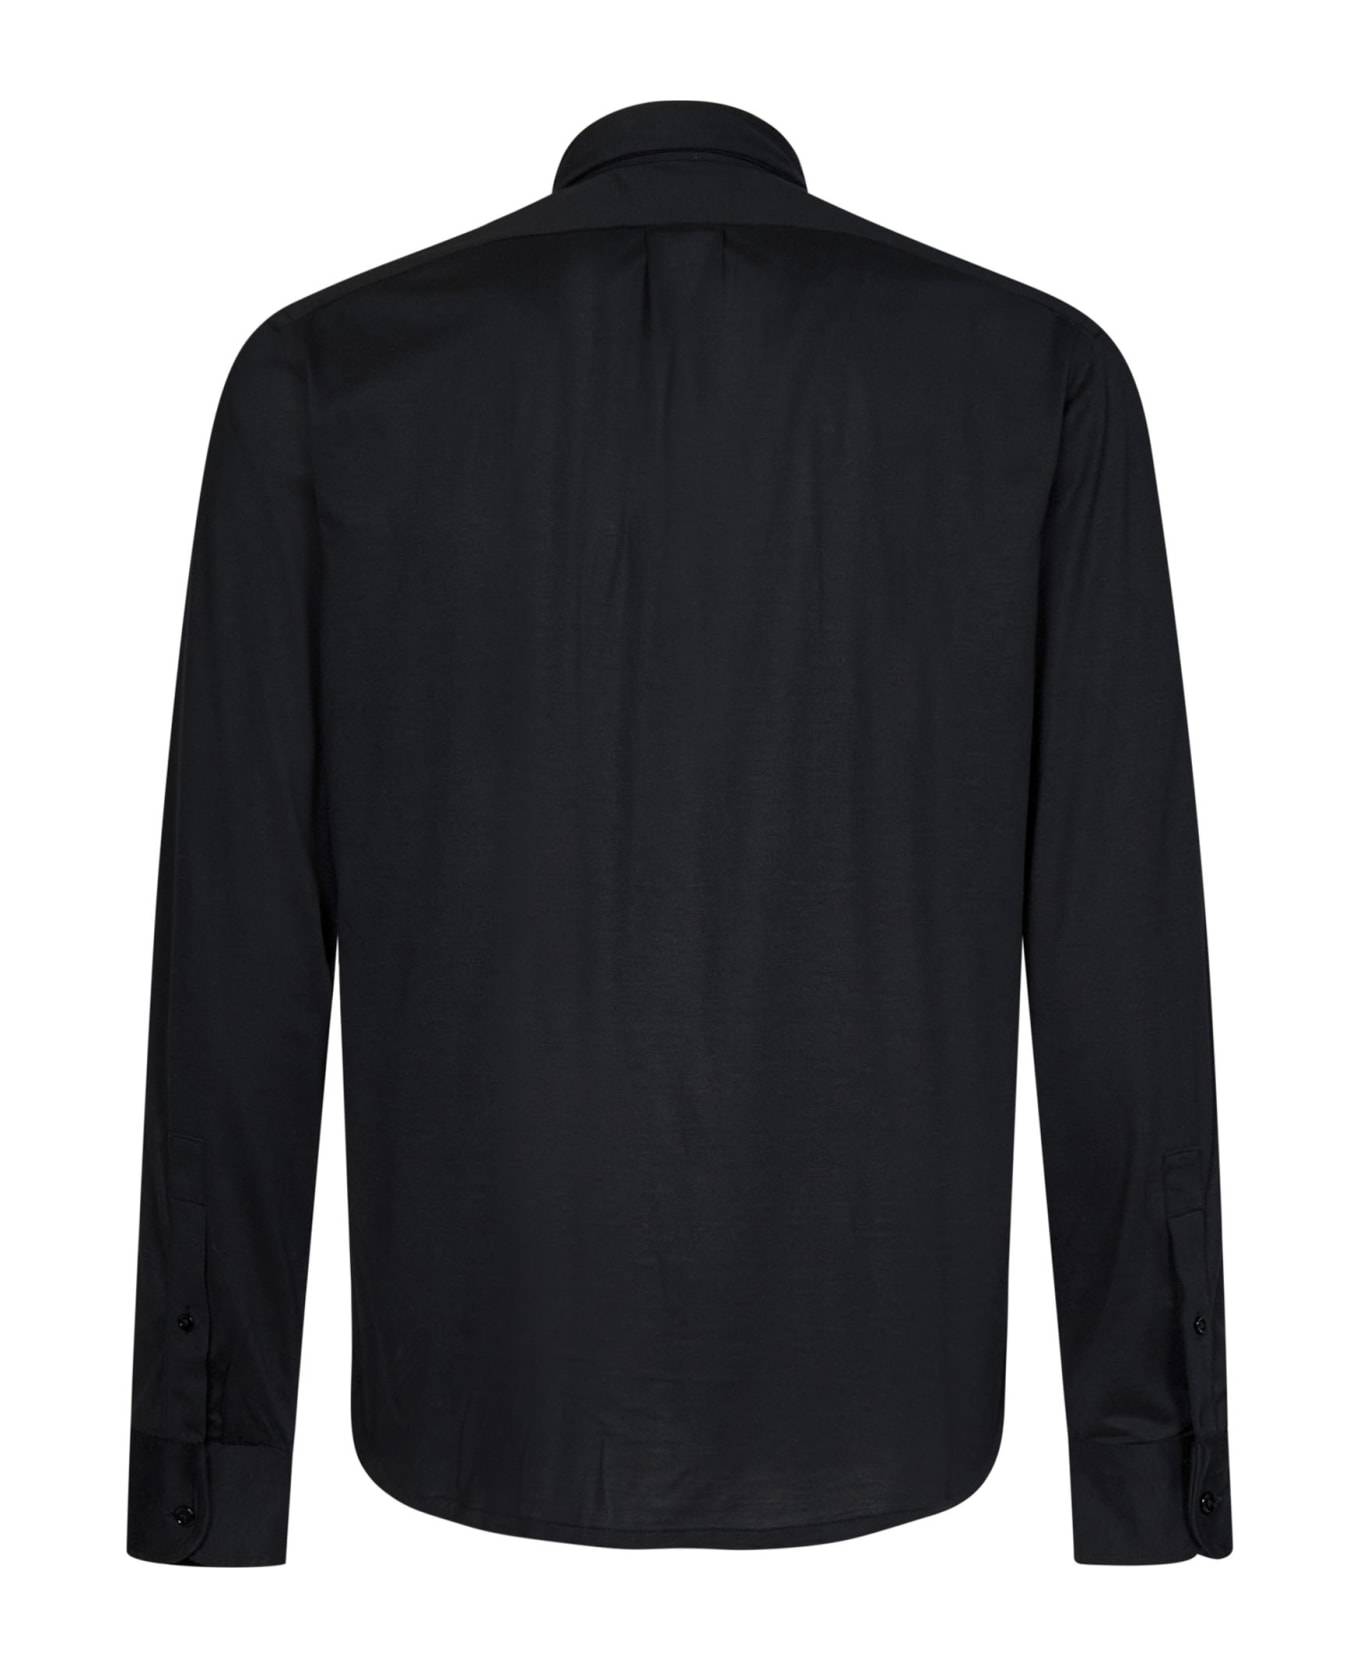 Tom Ford Shirt - Black シャツ